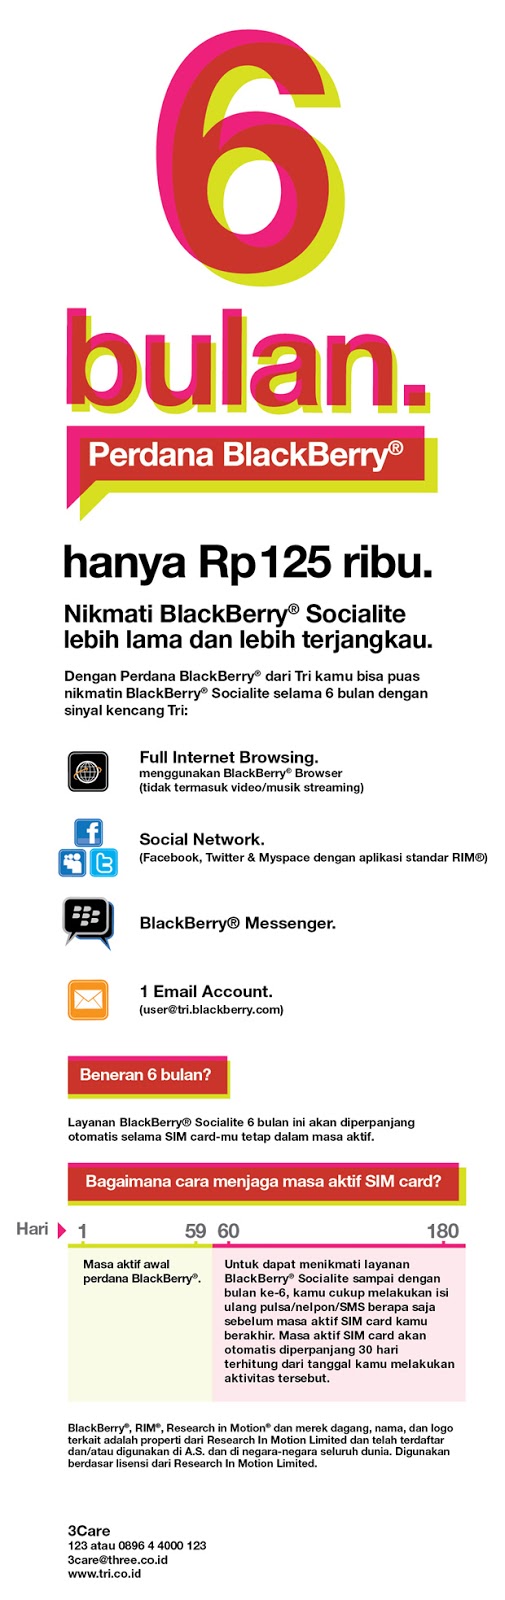 Harga terbaik untuk BlackBerry Q10 di Indonesia adalah Rp 1.200.000